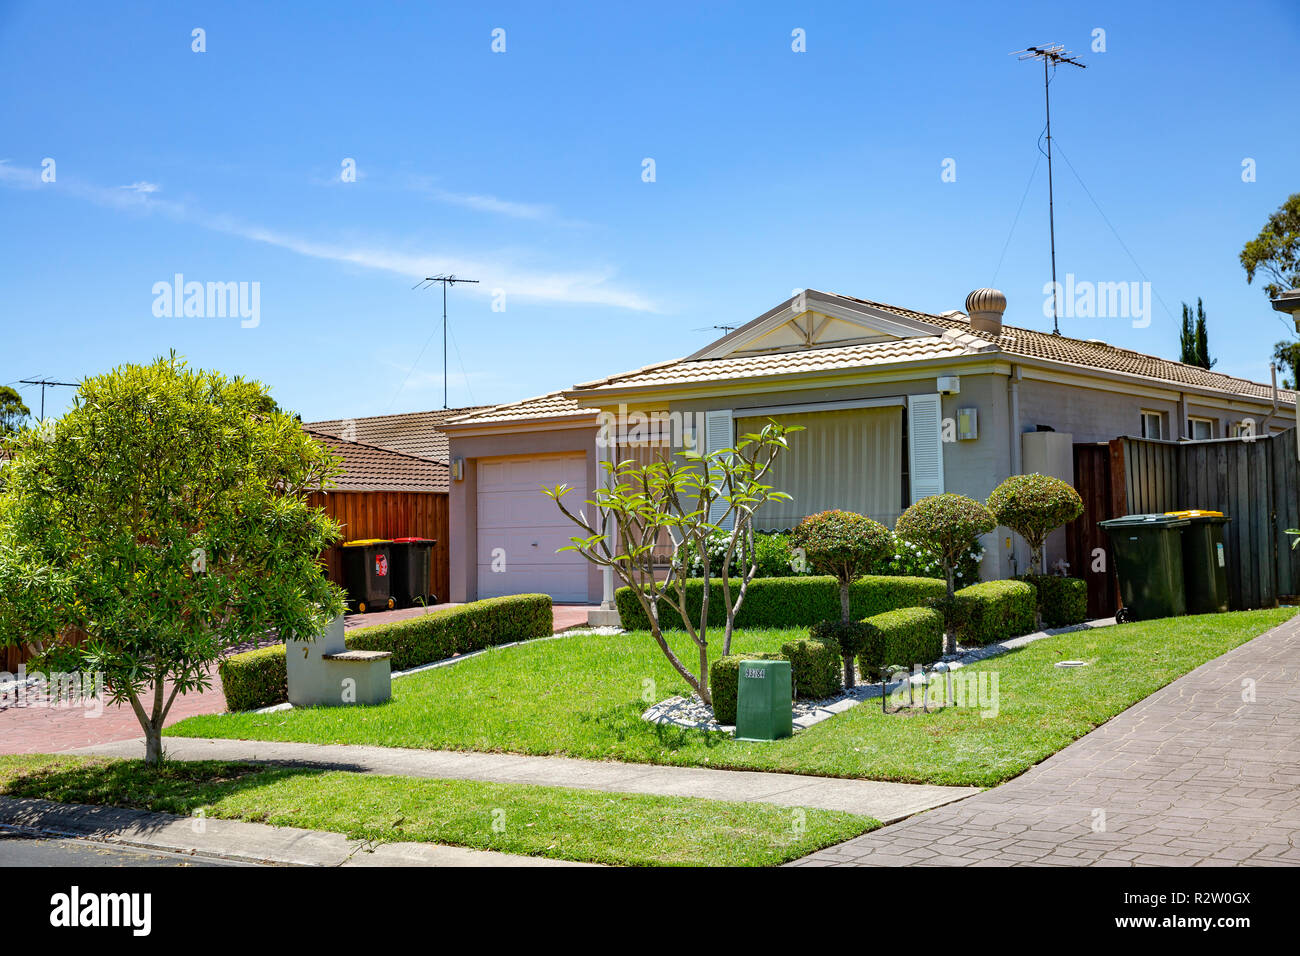 Typisches australisches einstöckiges Haus, hier in Parklea, einem Vorort von Greater Western, Sydney, NSW, Australien Stockfoto